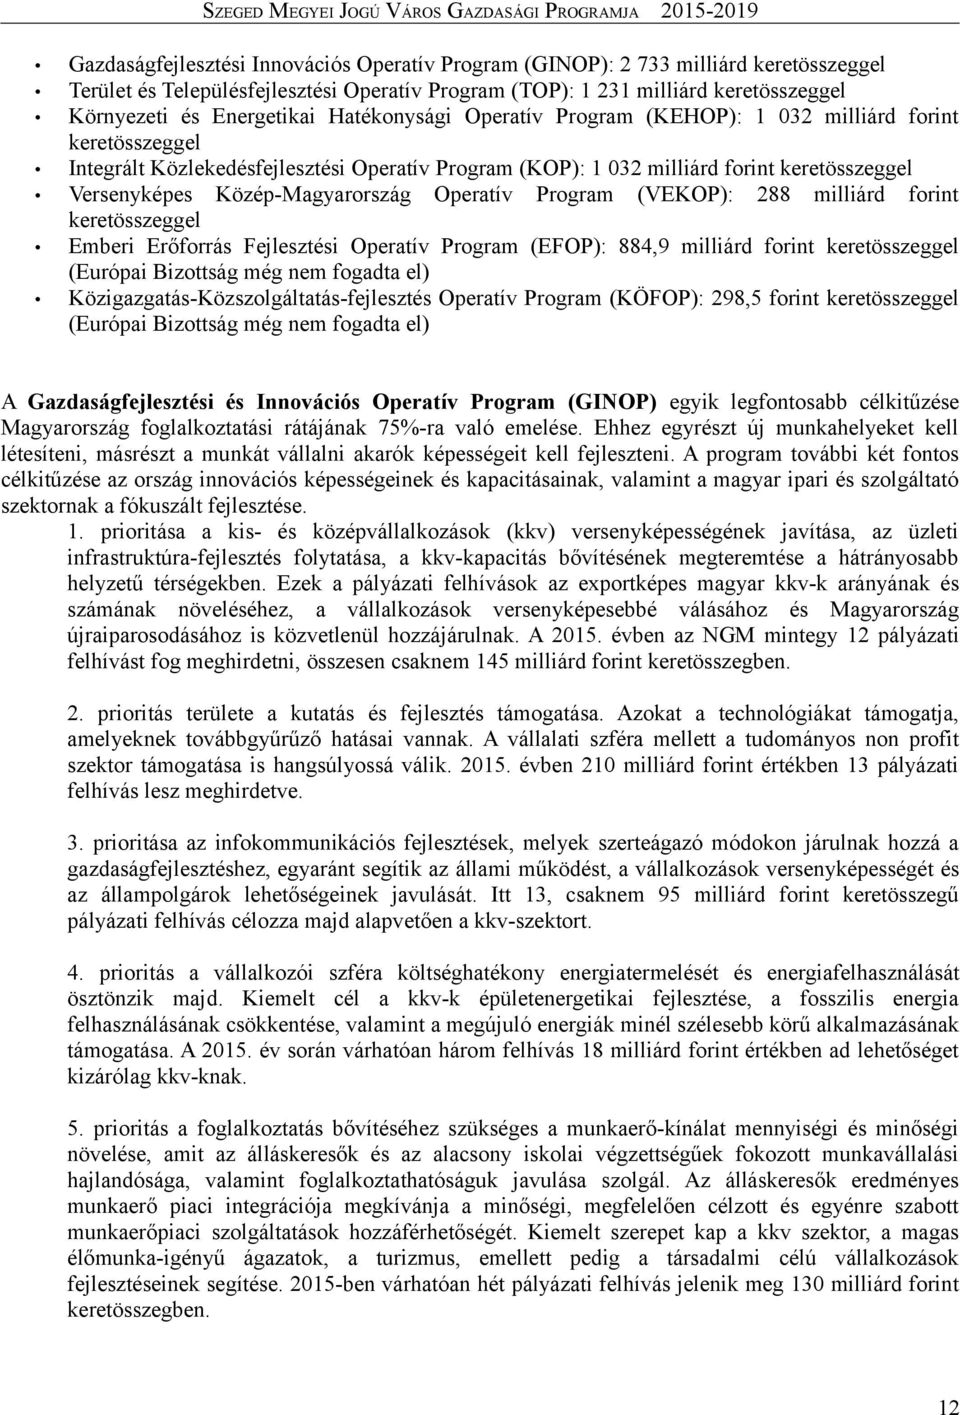 Közép-Magyarország Operatív Program (VEKOP): 288 milliárd forint keretösszeggel Emberi Erőforrás Fejlesztési Operatív Program (EFOP): 884,9 milliárd forint keretösszeggel (Európai Bizottság még nem